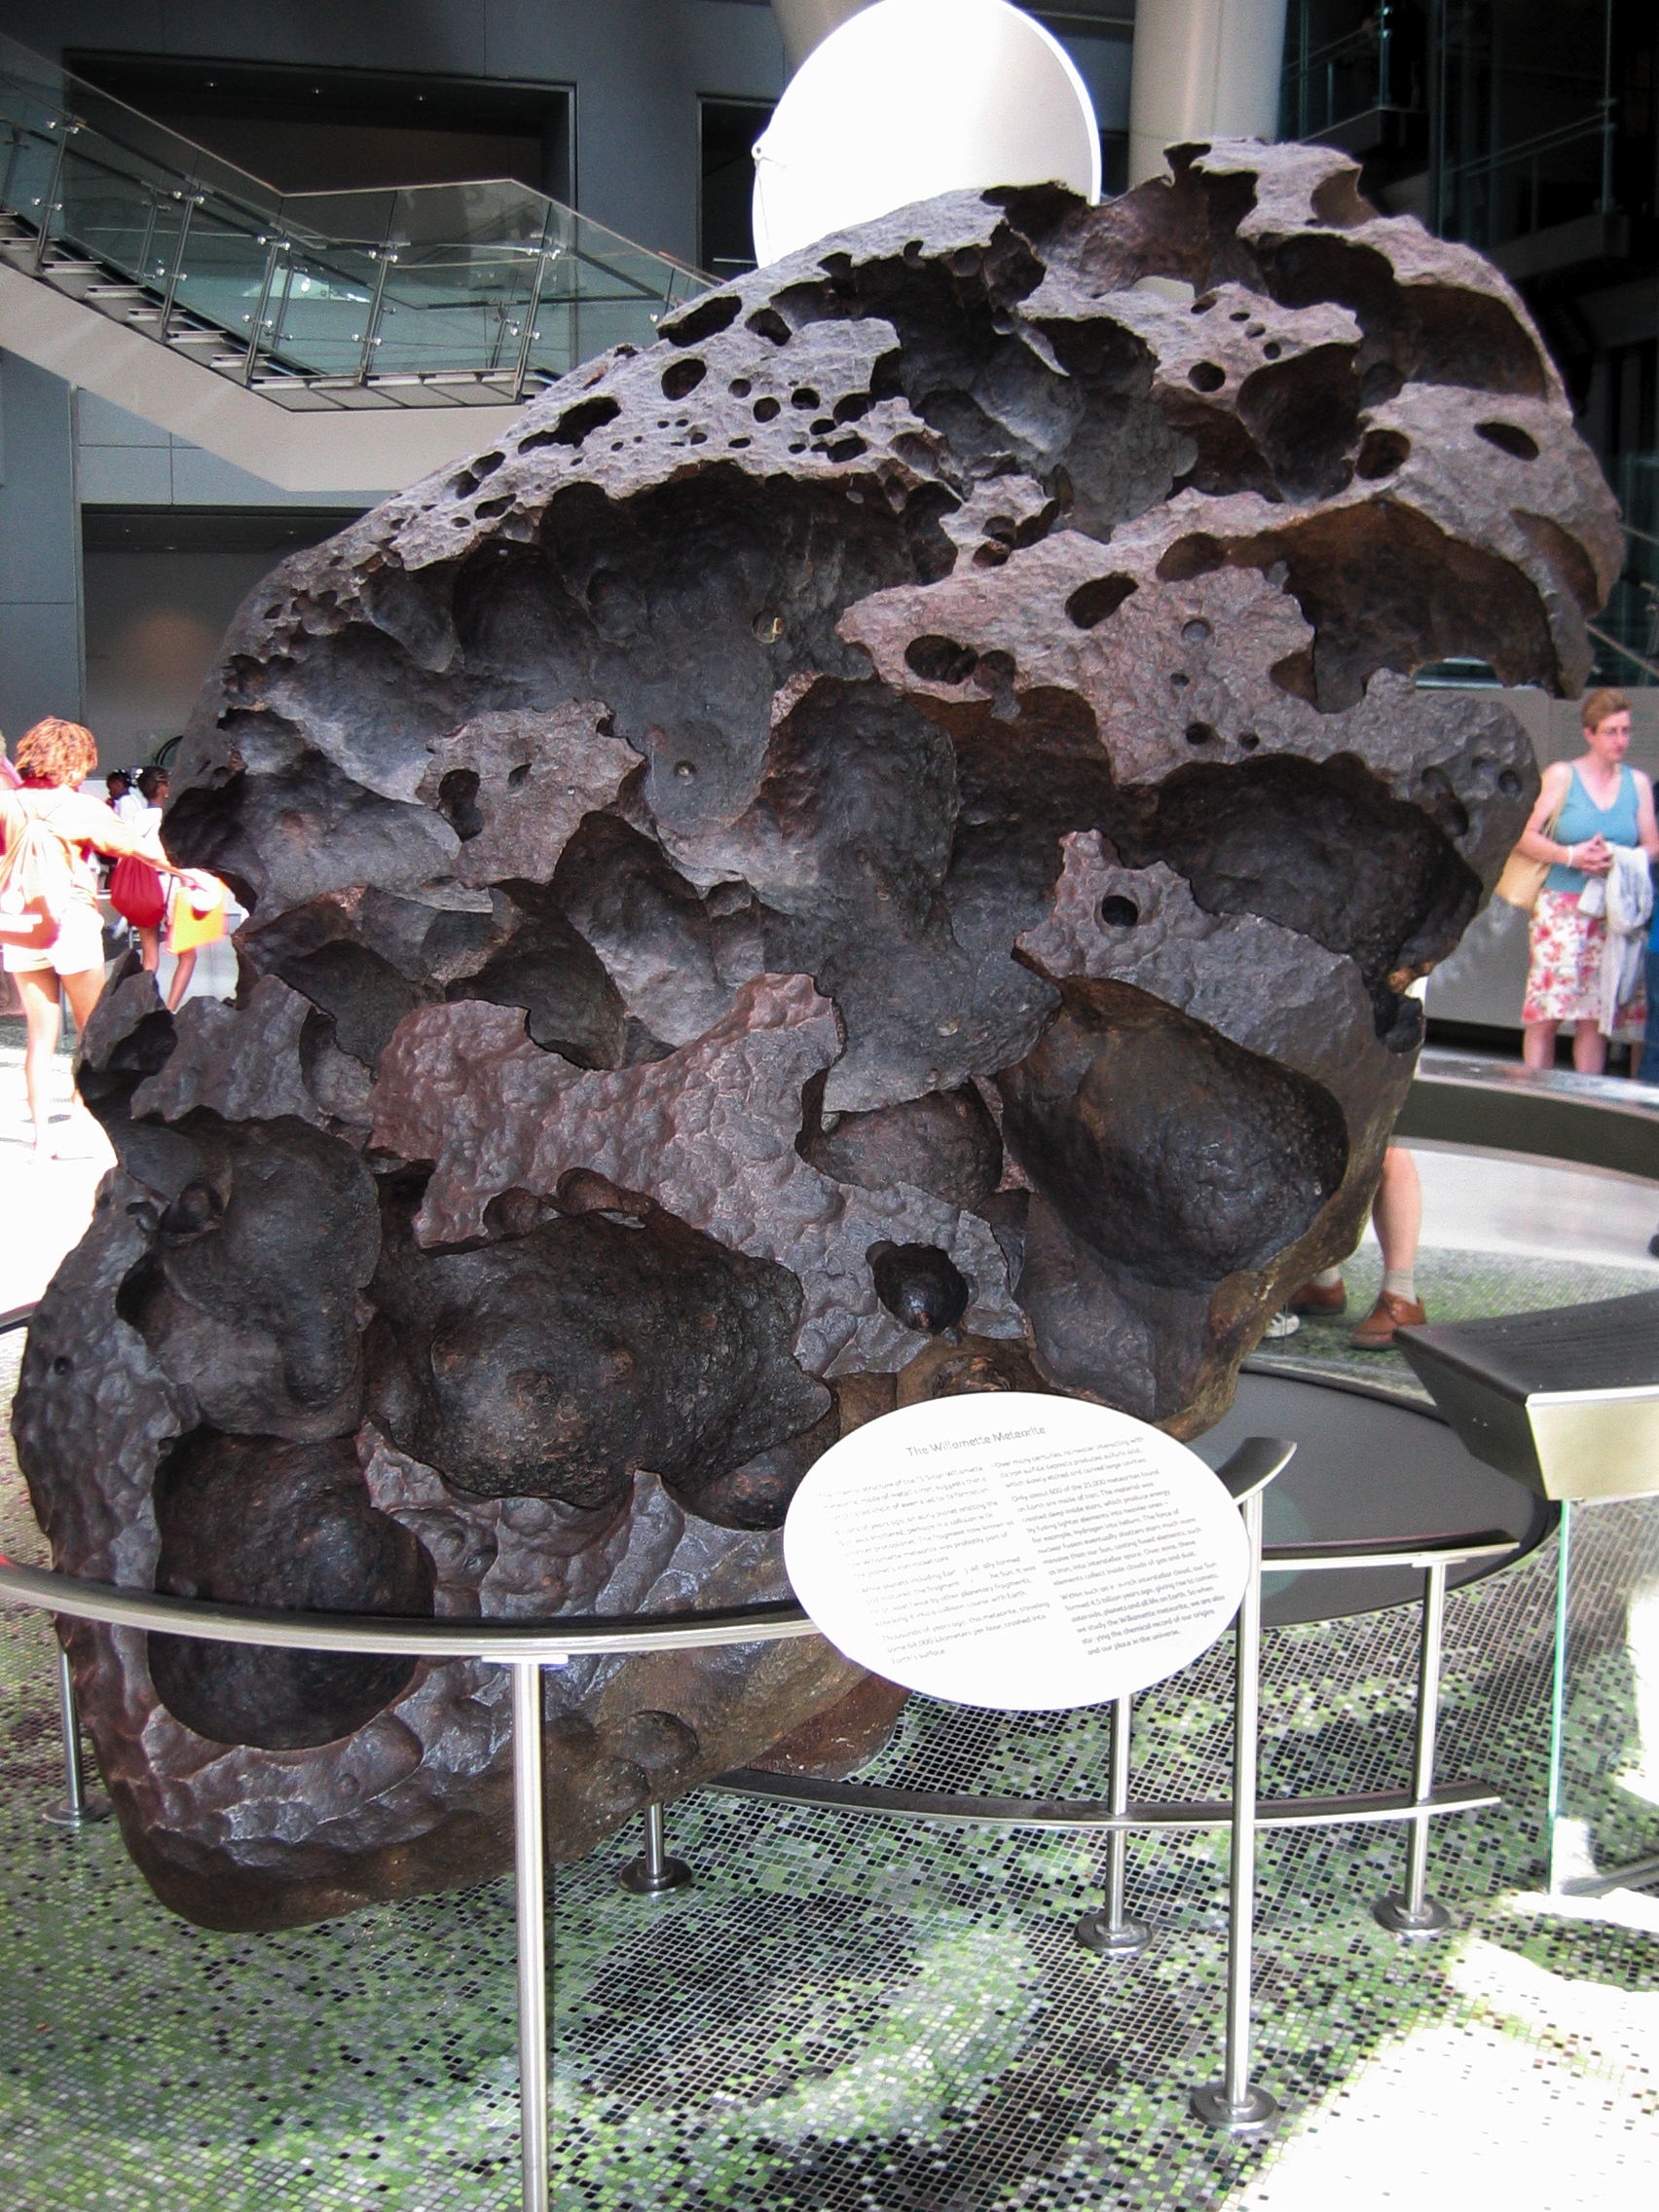 Auf dem Bild ist ein Meteorit zu sehen